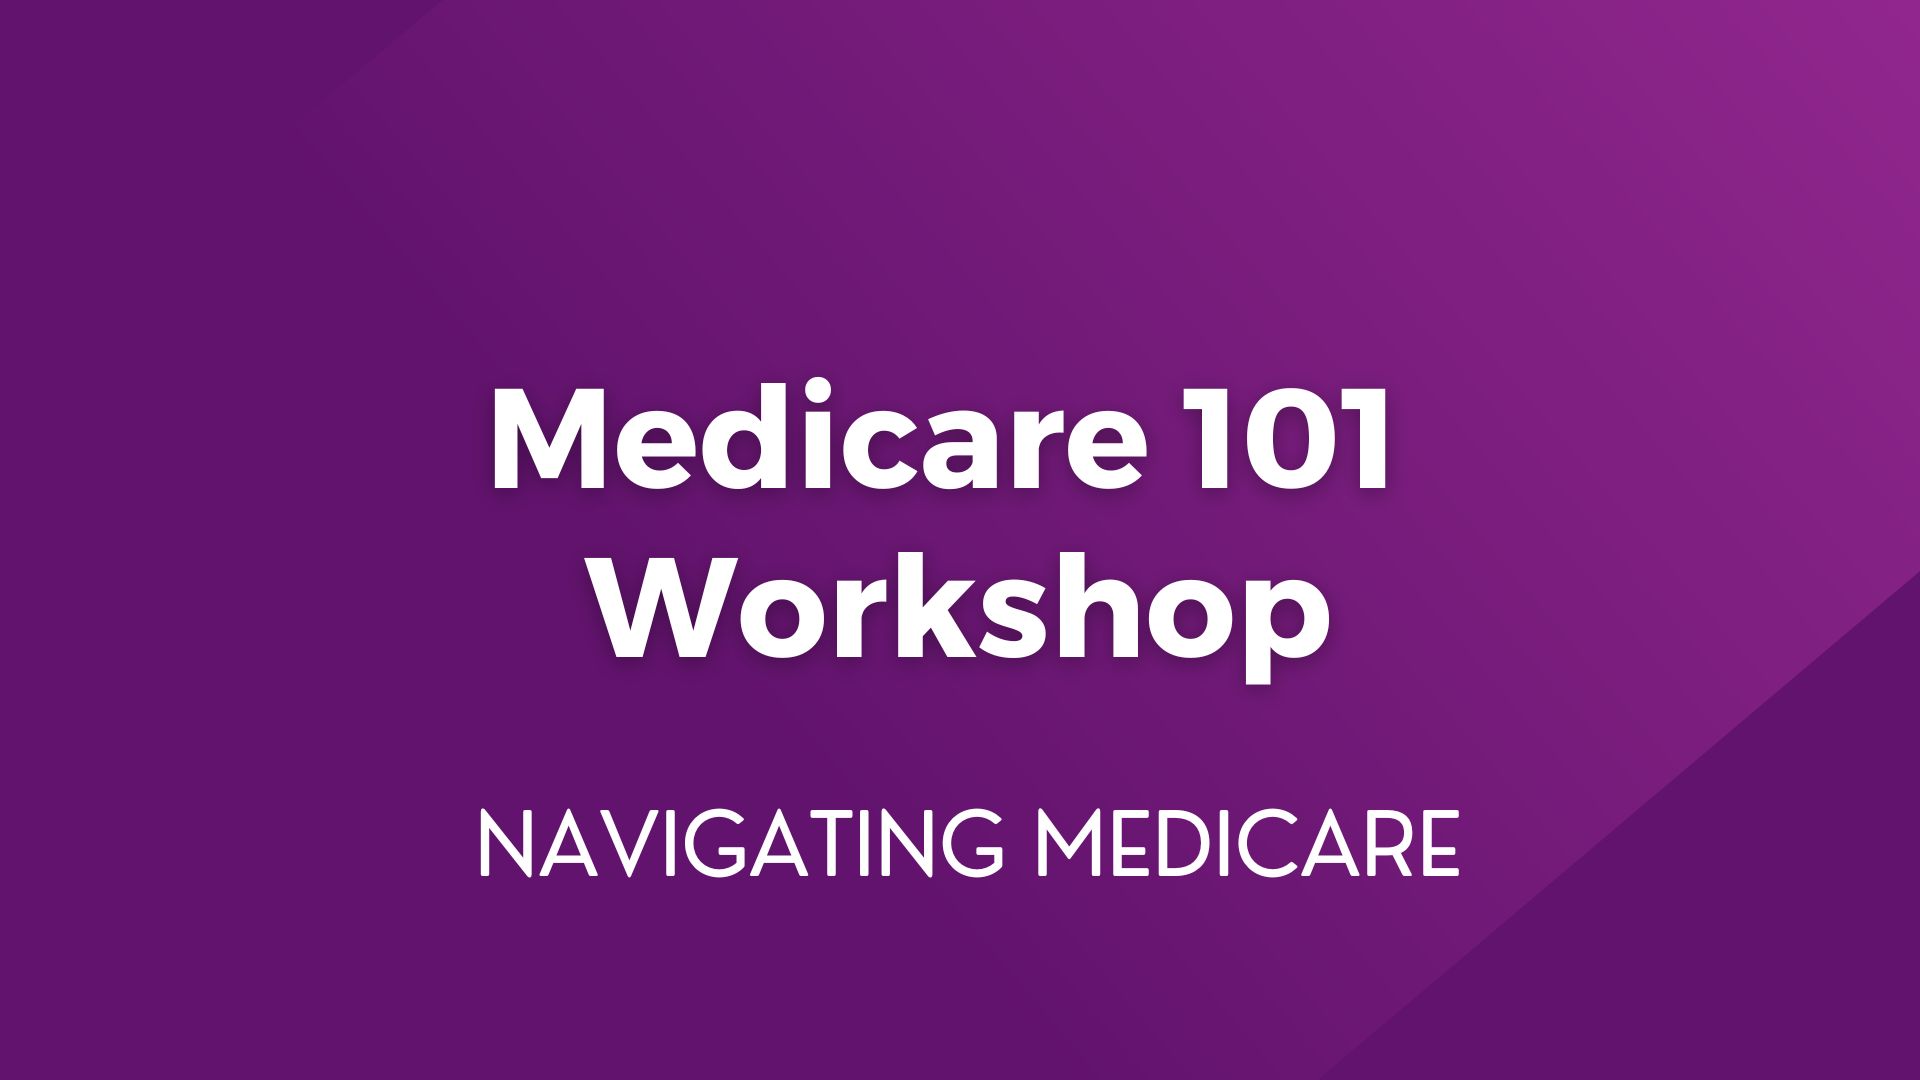 Medicare 101 Workshop – February 20